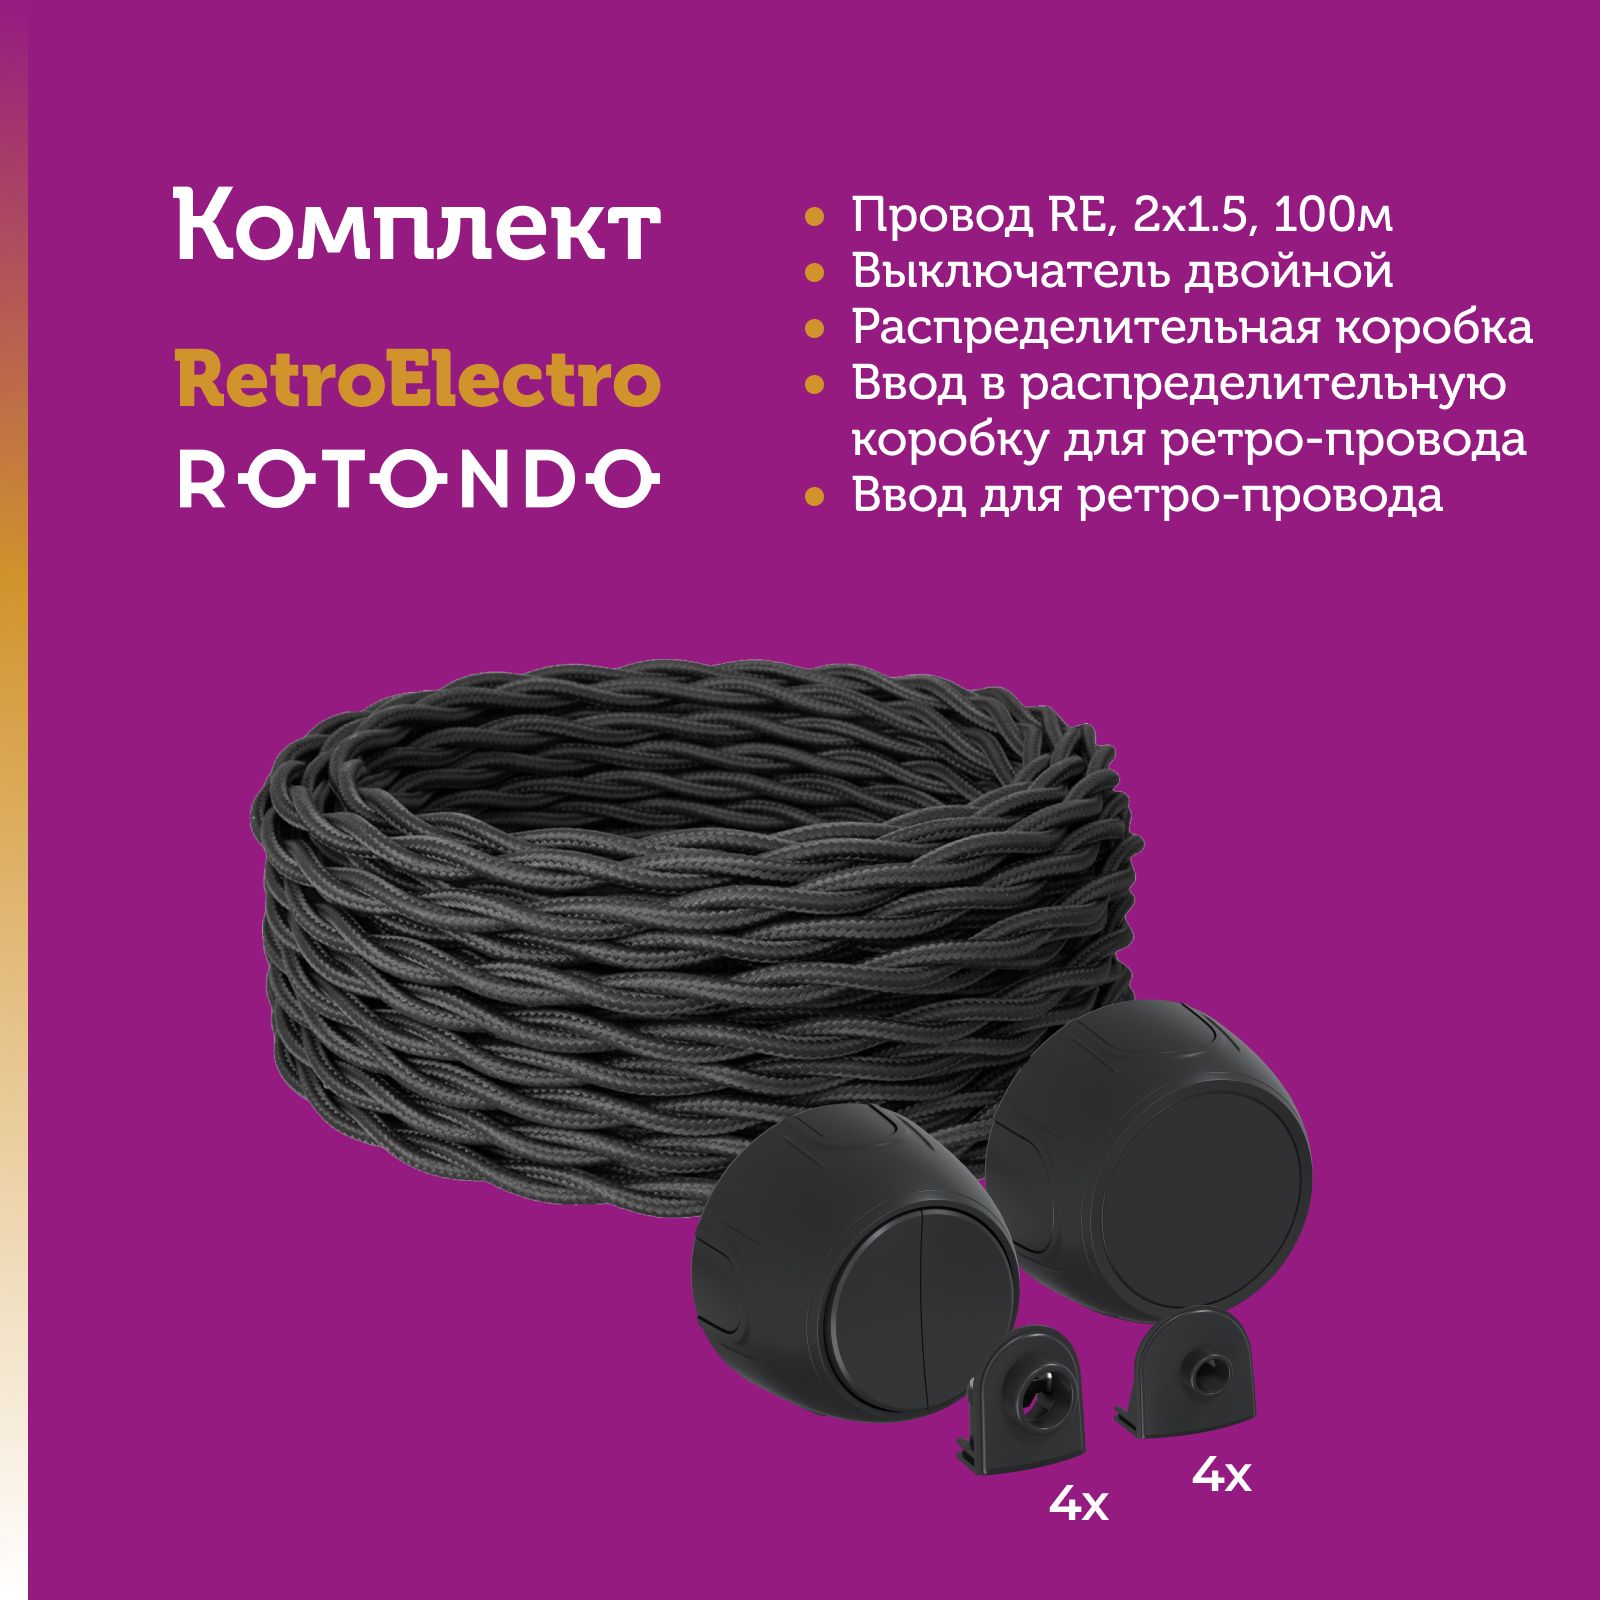 Кабель Retro Electro 7722850 с электроустановочными изделиями Rotondo OneKeyElectro